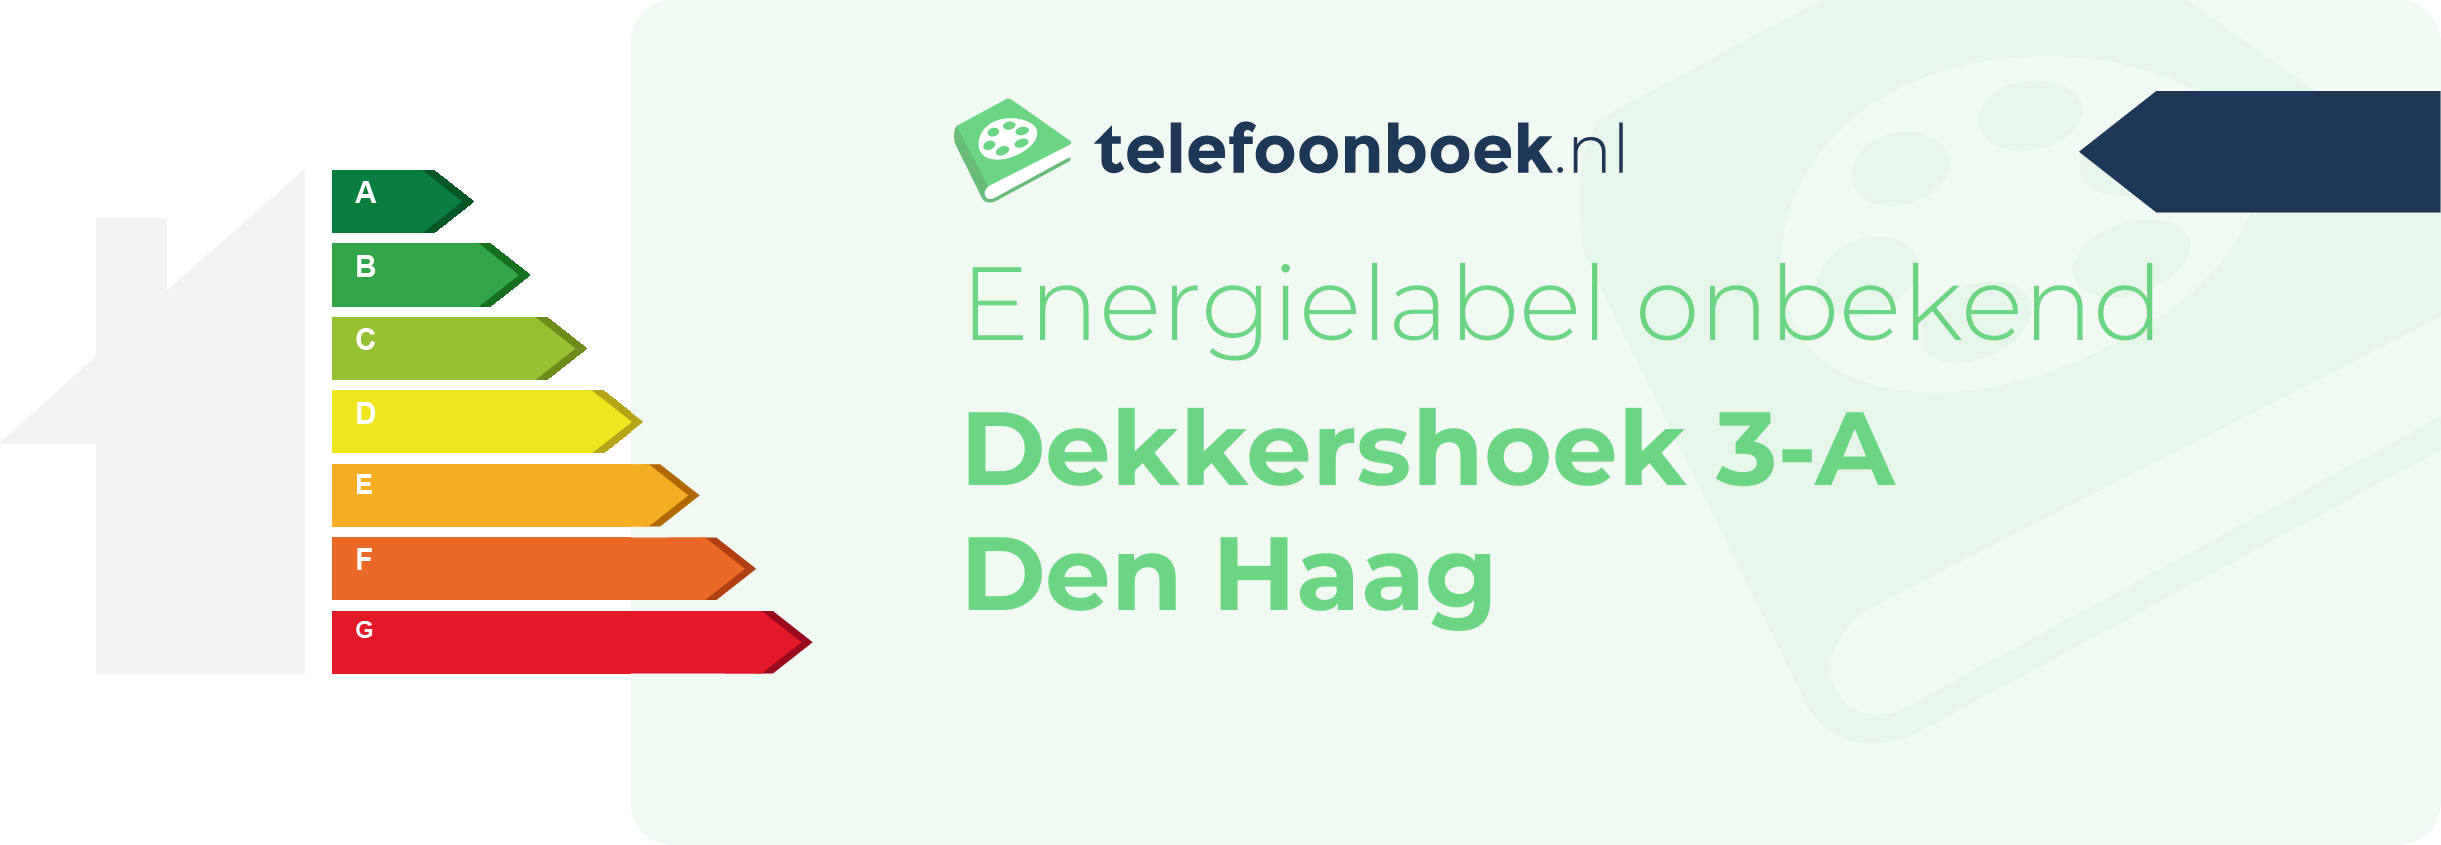 Energielabel Dekkershoek 3-A Den Haag